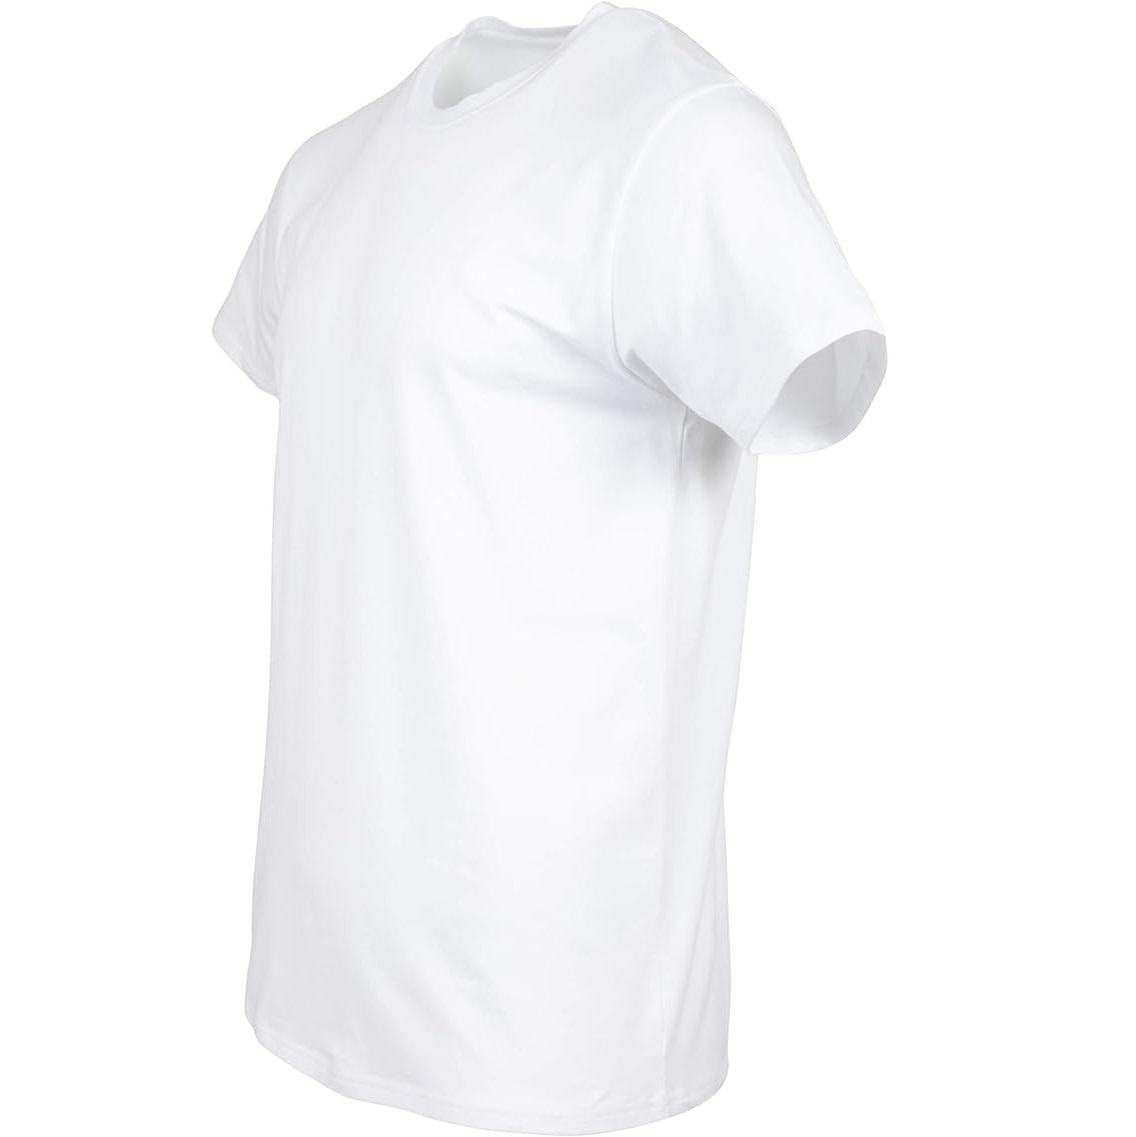 【多尺碼可選】Gildan 男士白色 T-Shirts 三件組 $9.98